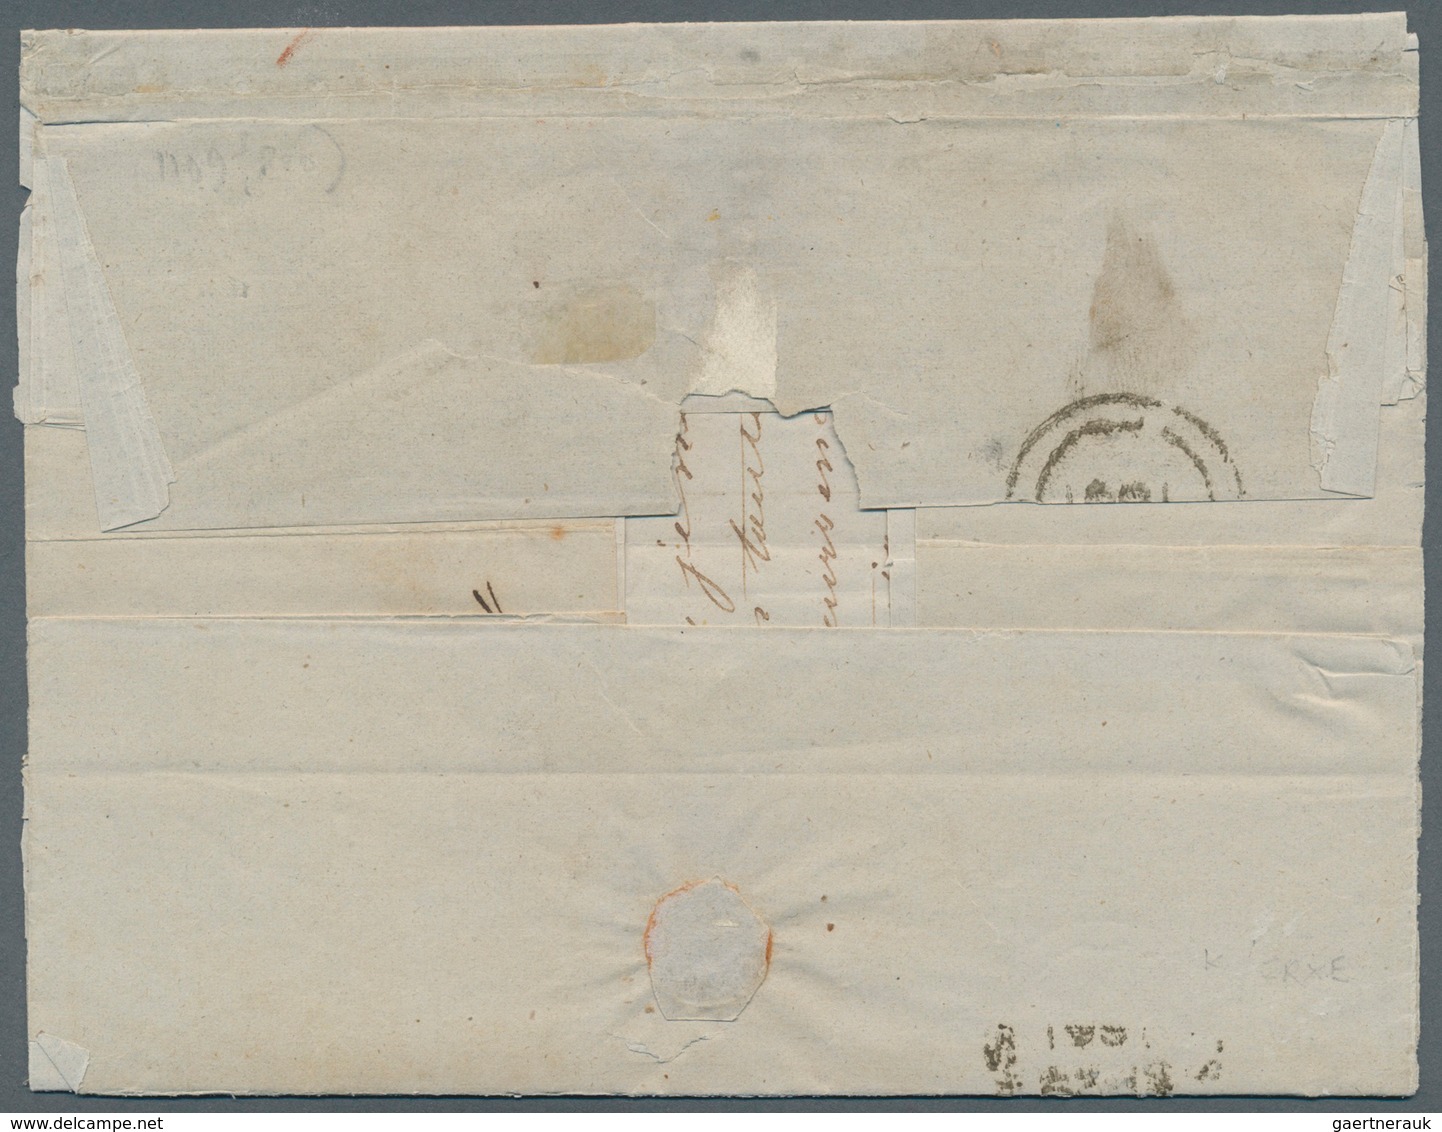 Dänisch-Westindien: 1861. Stampless Envelope Addressed To Saint Thomes, Danish West Indies Written F - Dänische Antillen (Westindien)